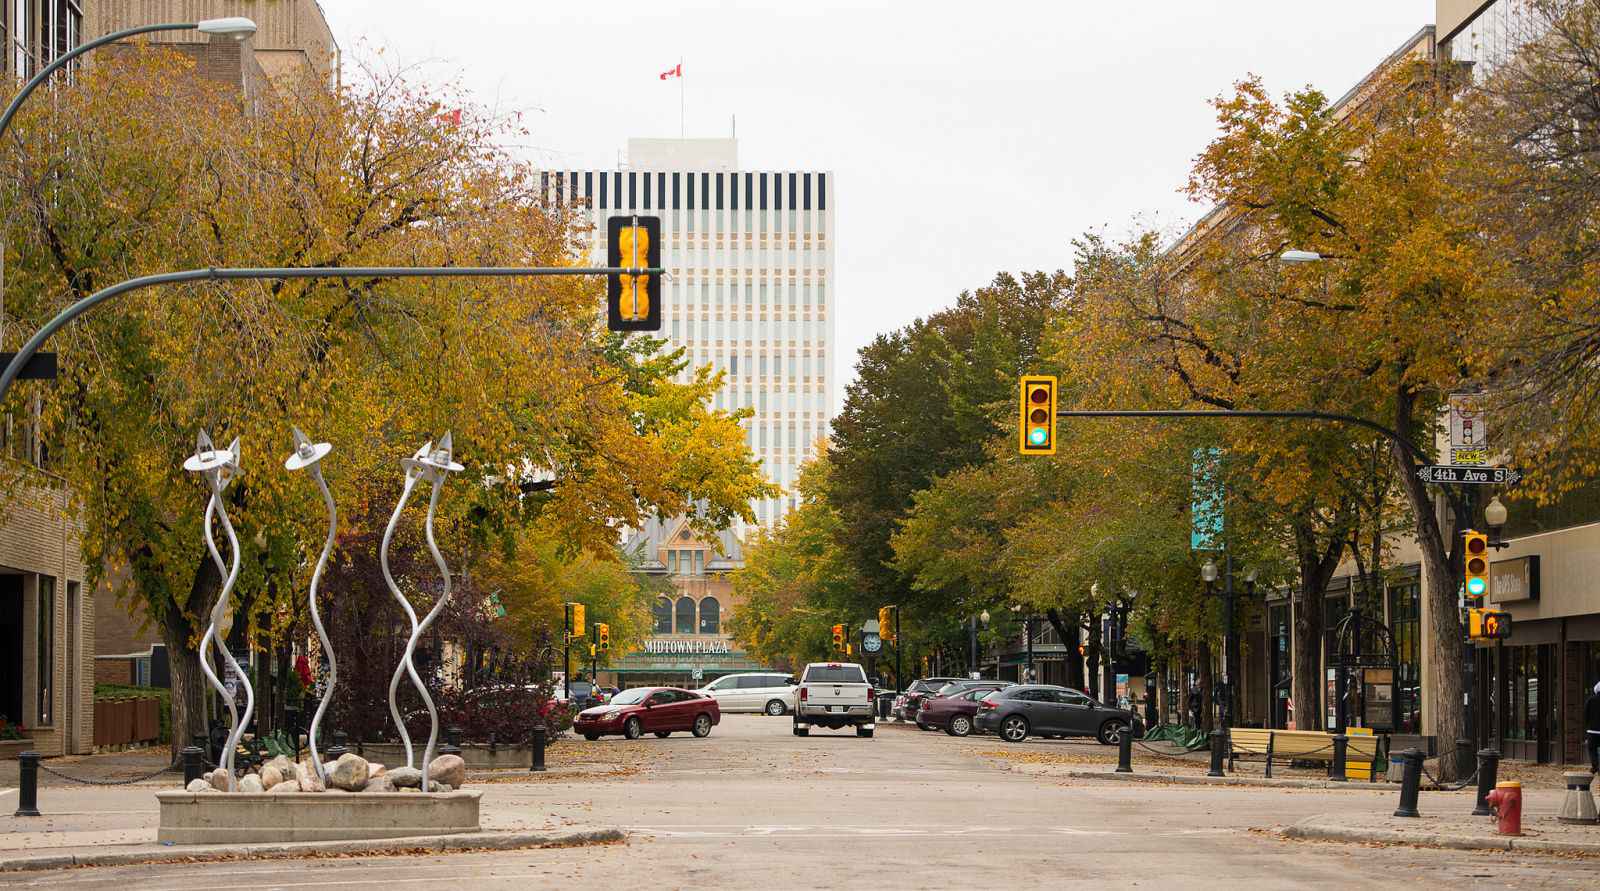 Sức sống trẻ của thành phố Saskatoon và sự giàu có về văn hóa được thể hiện rõ ở mỗi khu phố